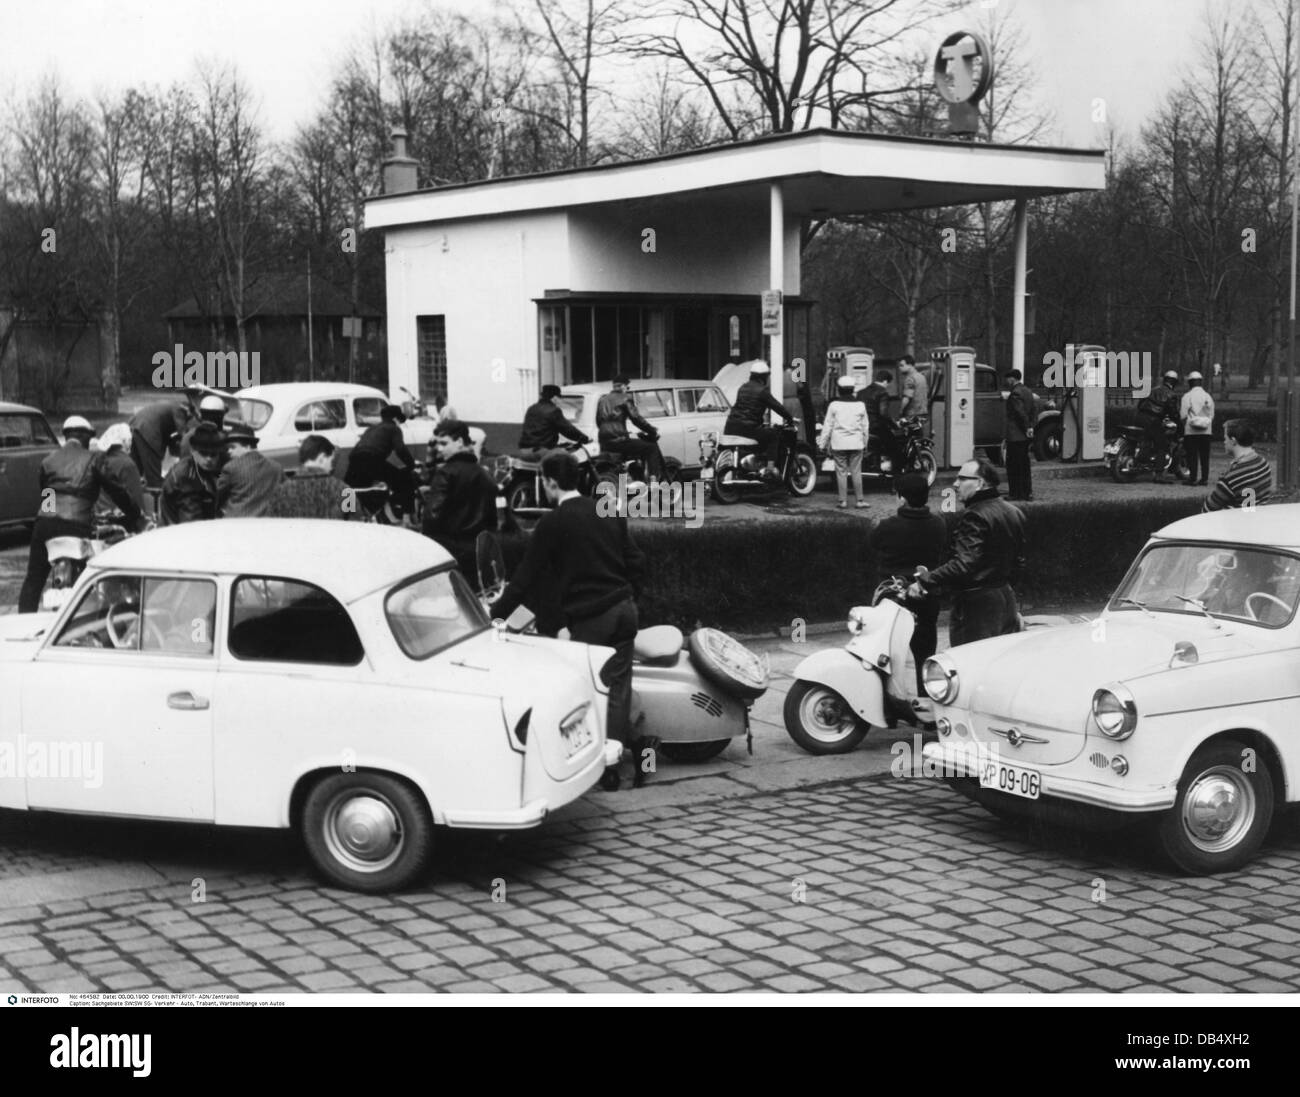 Trasporto / trasporto, auto, stazione di benzina, linea d'attesa di auto e moto di fronte a una stazione di benzina, distretto Karl-Marx-Stadt, Germania orientale, 17.4.1963, diritti aggiuntivi-clearences-non disponibile Foto Stock